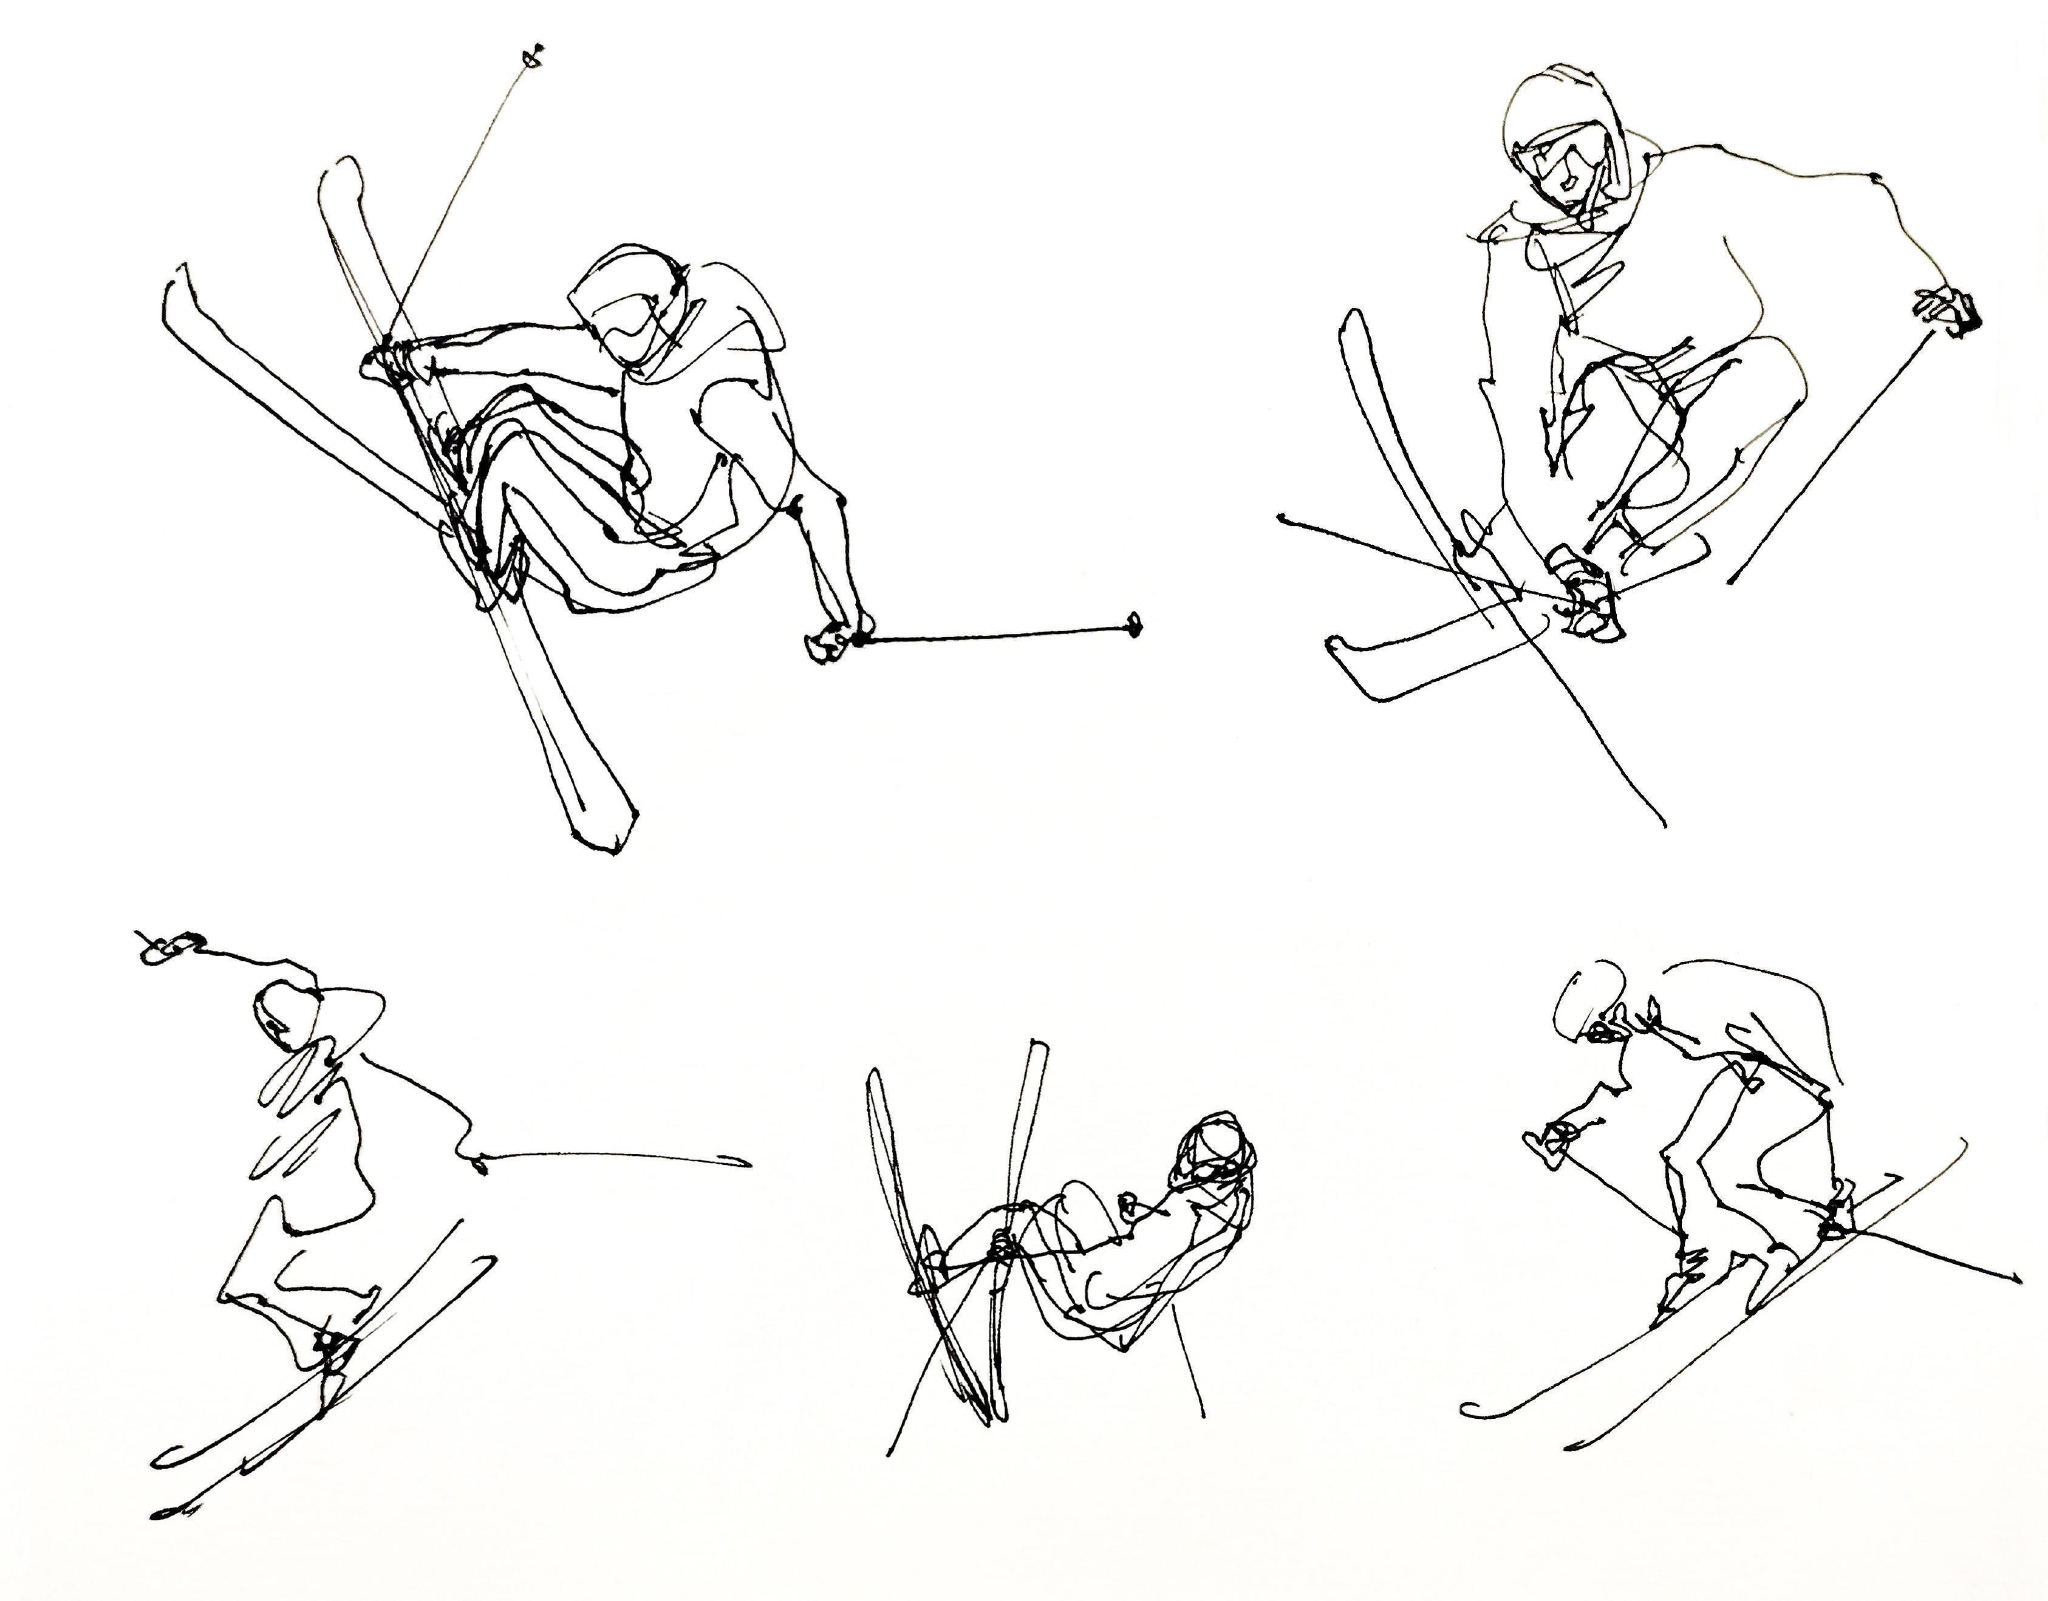 自由式滑雪坡面冰球赛双人花样滑冰花样滑冰"葱桶"组合第九金冬运